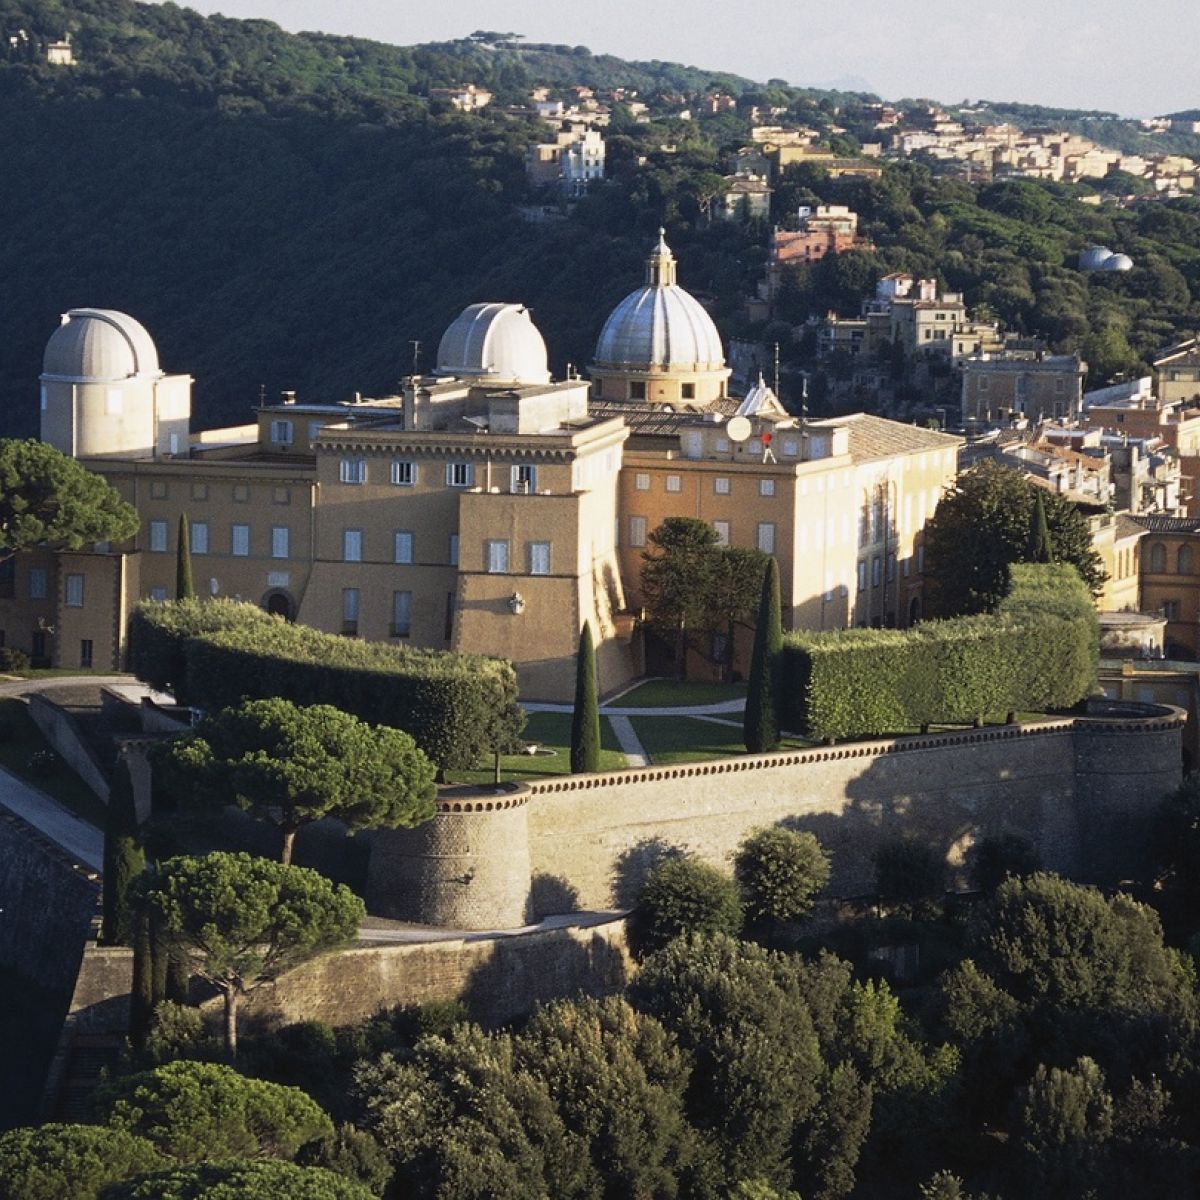 Apostolic papal palace at Castel Gandolfo is opened to public